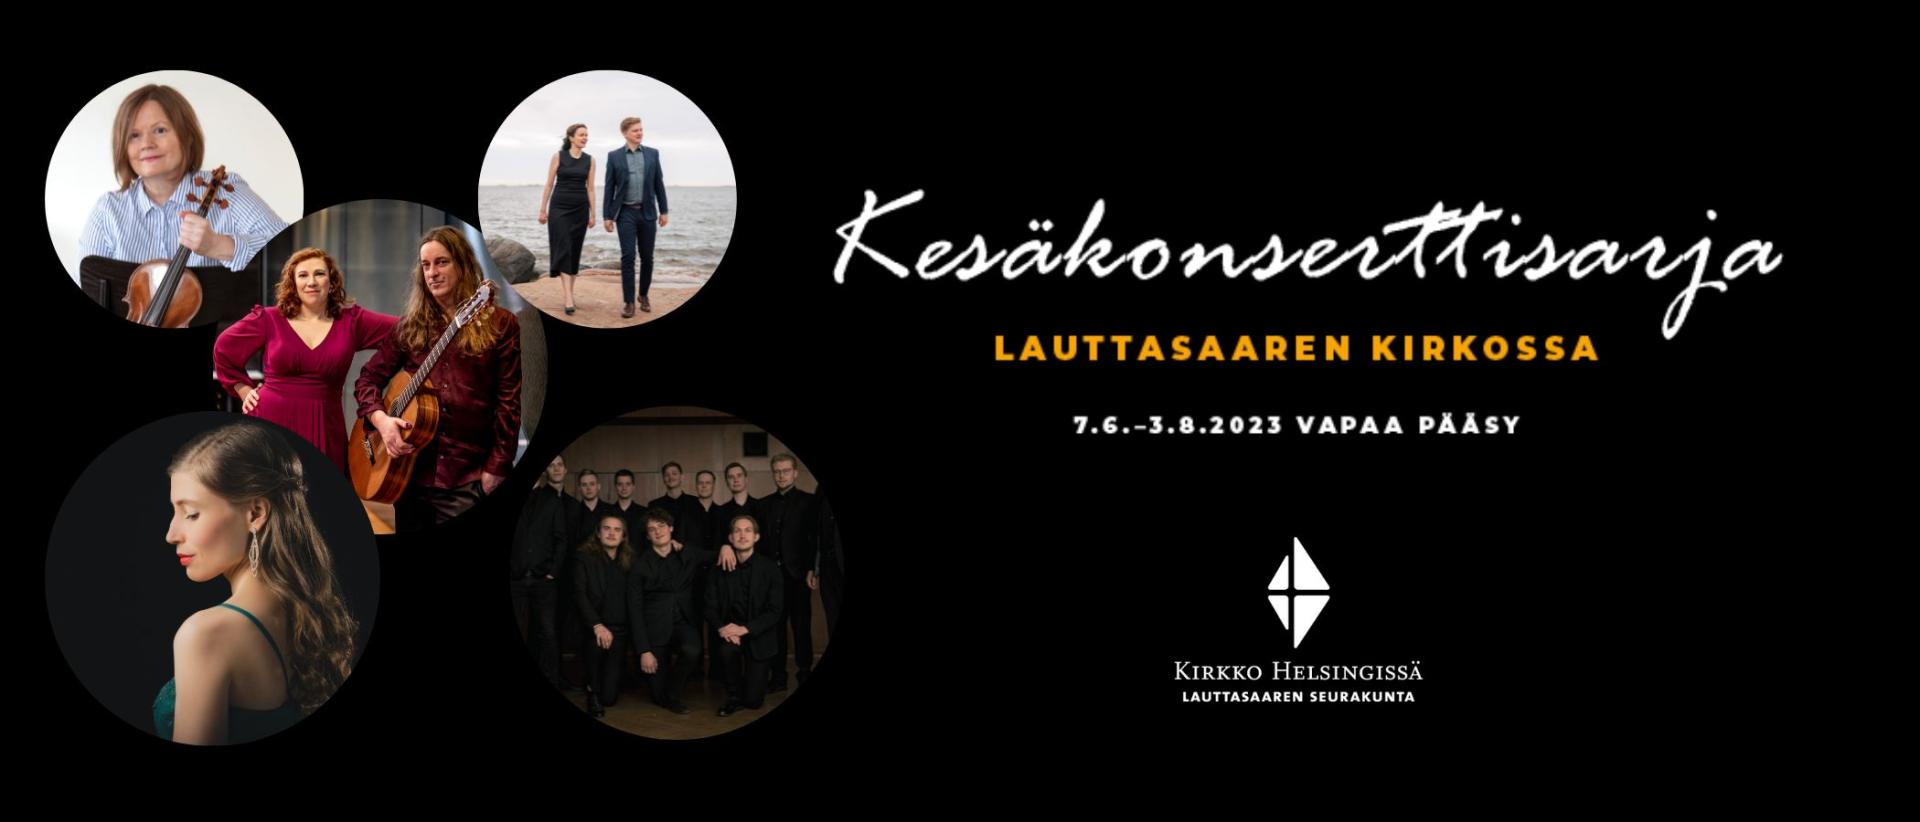 Kesäkonsertit Lauttasaaren kirkossa